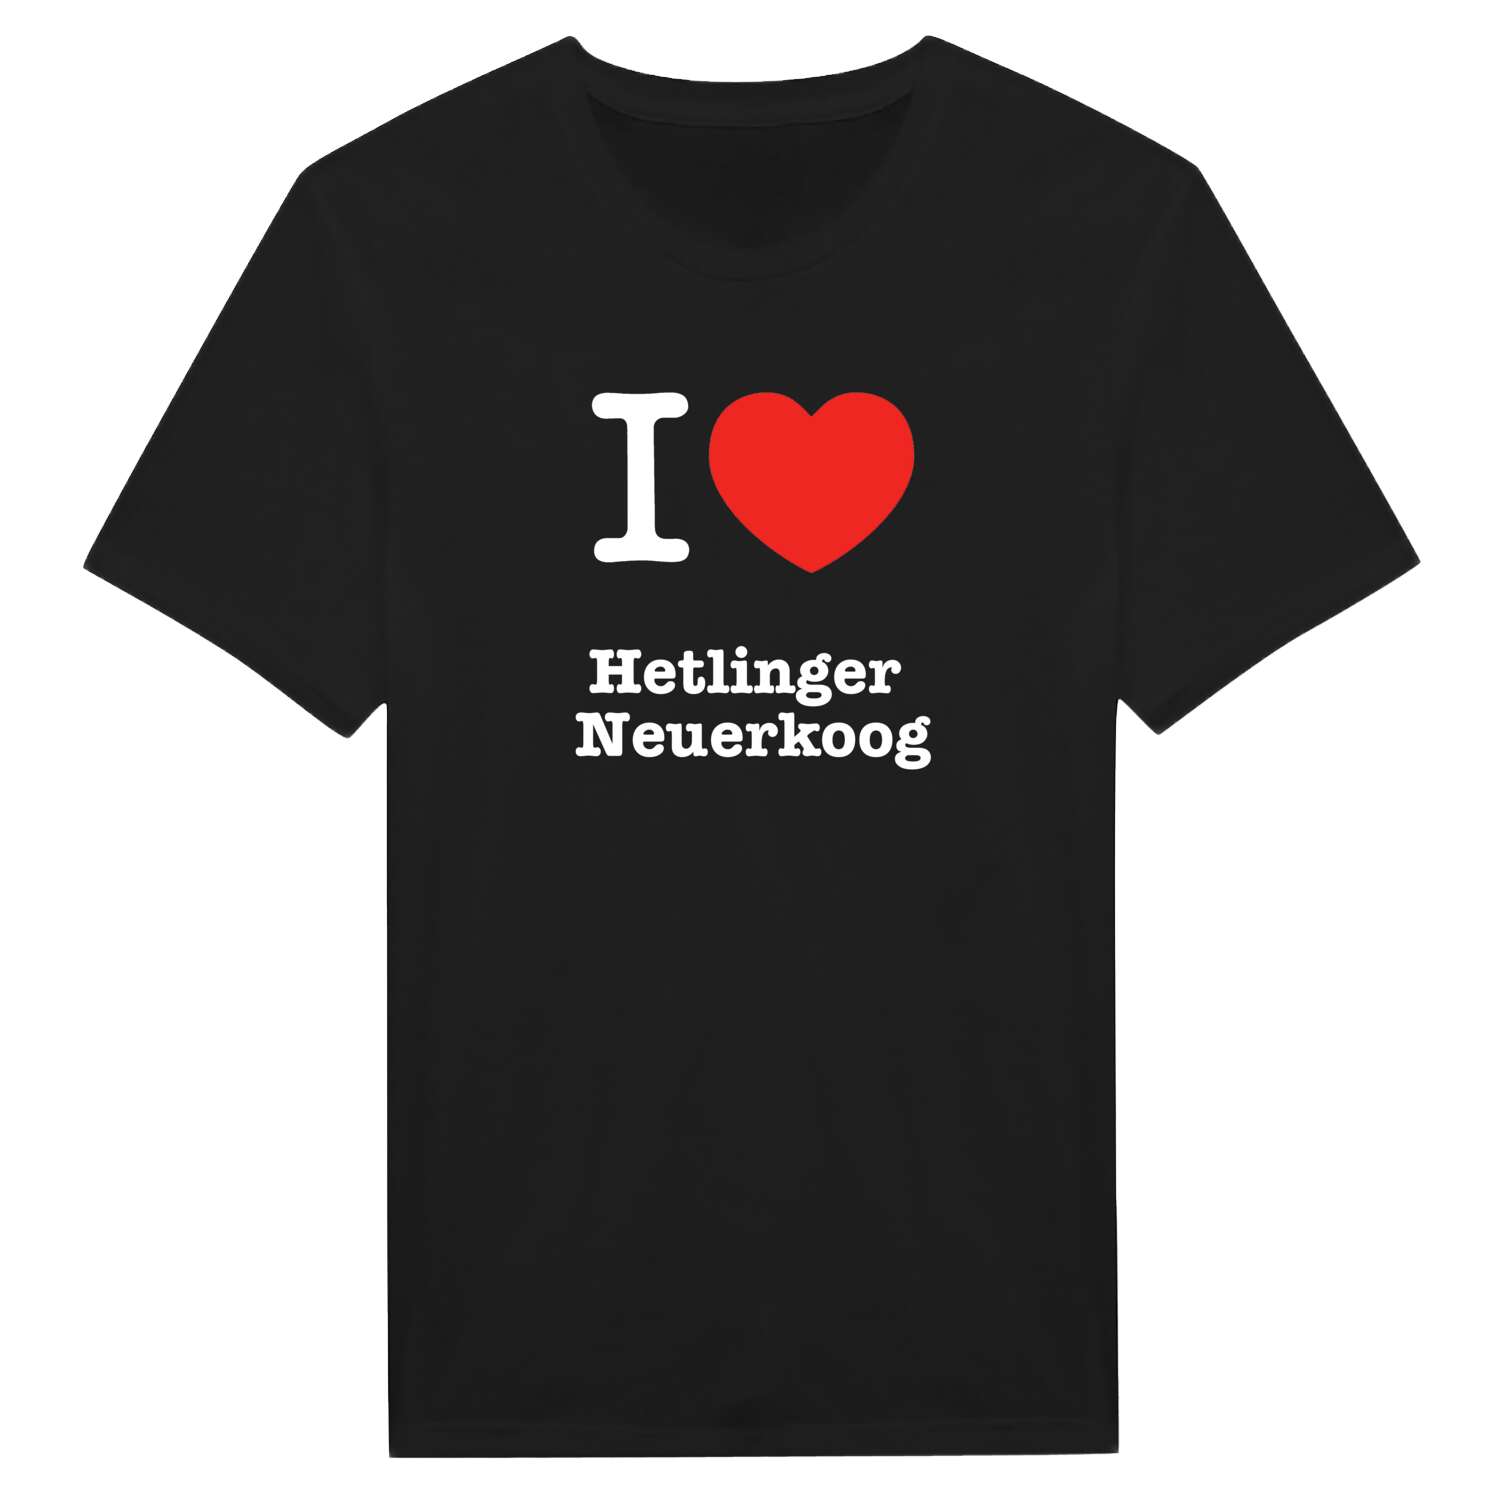 Hetlinger Neuerkoog T-Shirt »I love«